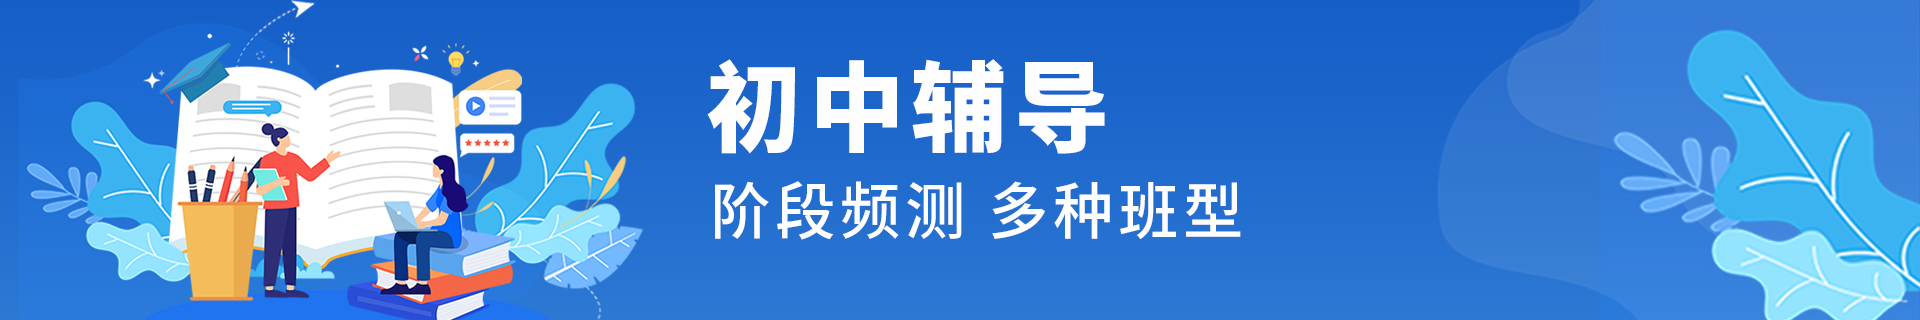 邢台桥东区励学个性化教育机构